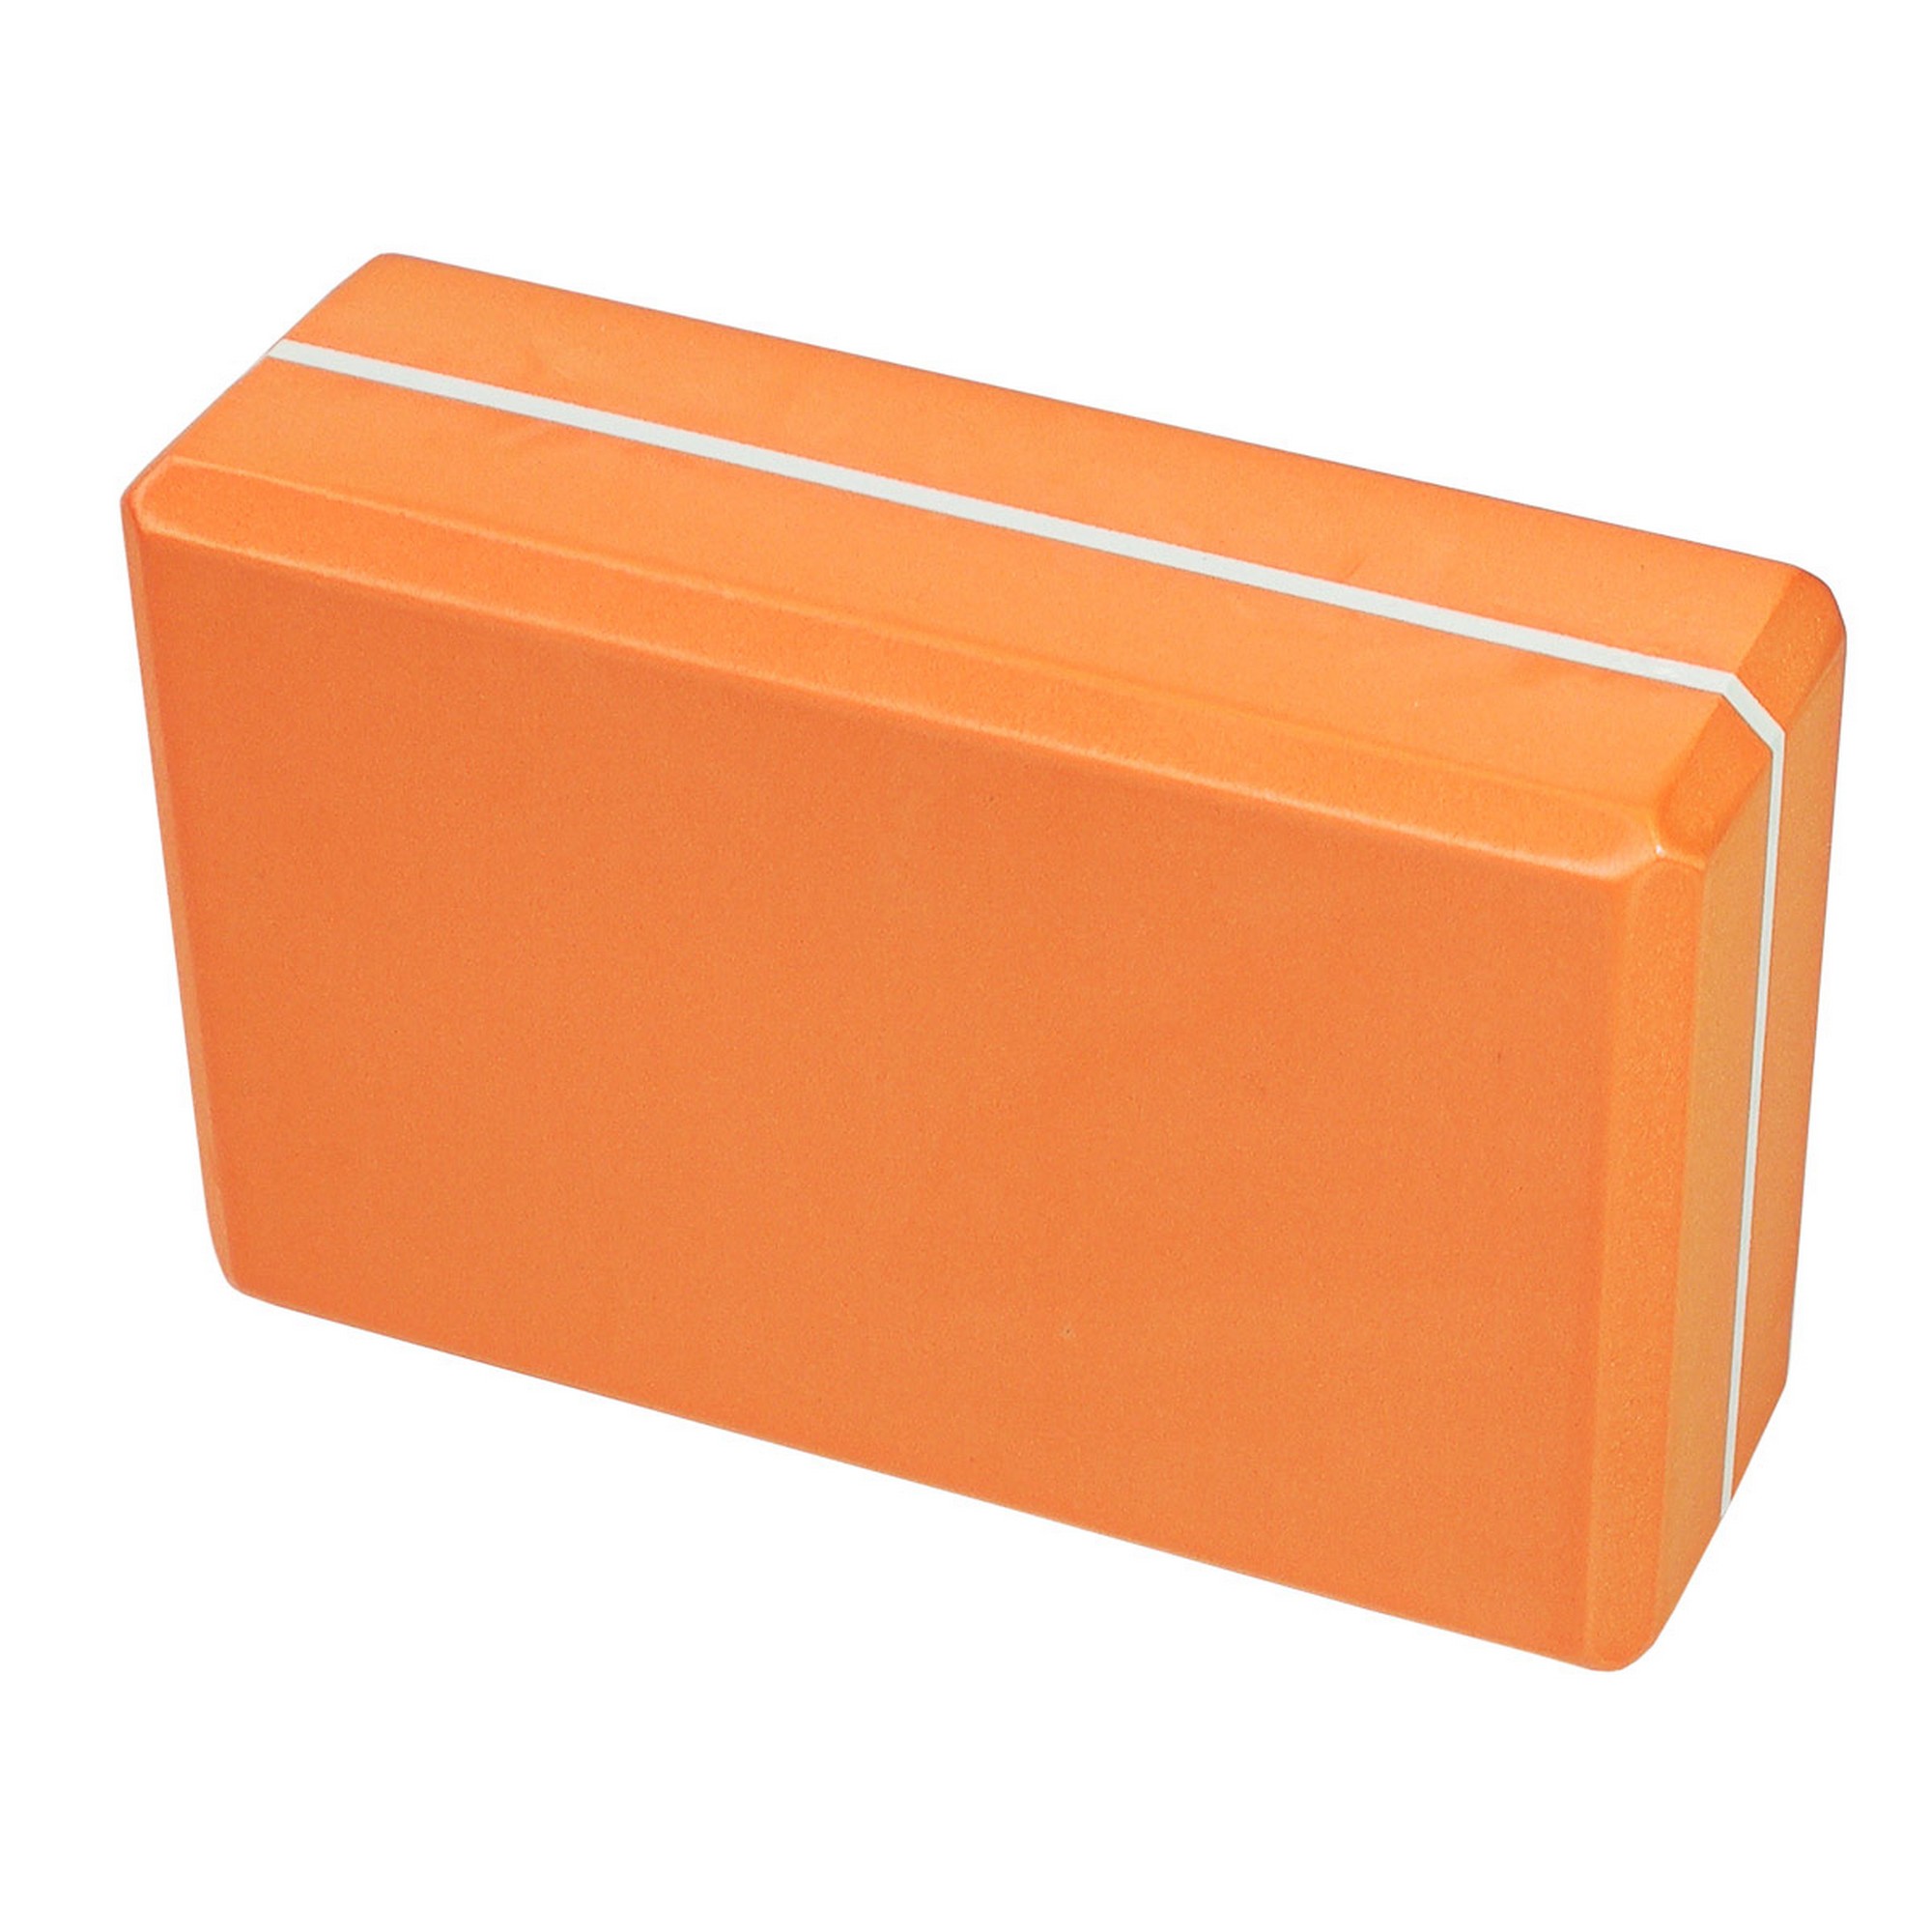 Йога блок Sportex полумягкий, из вспененного ЭВА 22,3х15х7,6 см E39131-16 оранжевый - фото 1